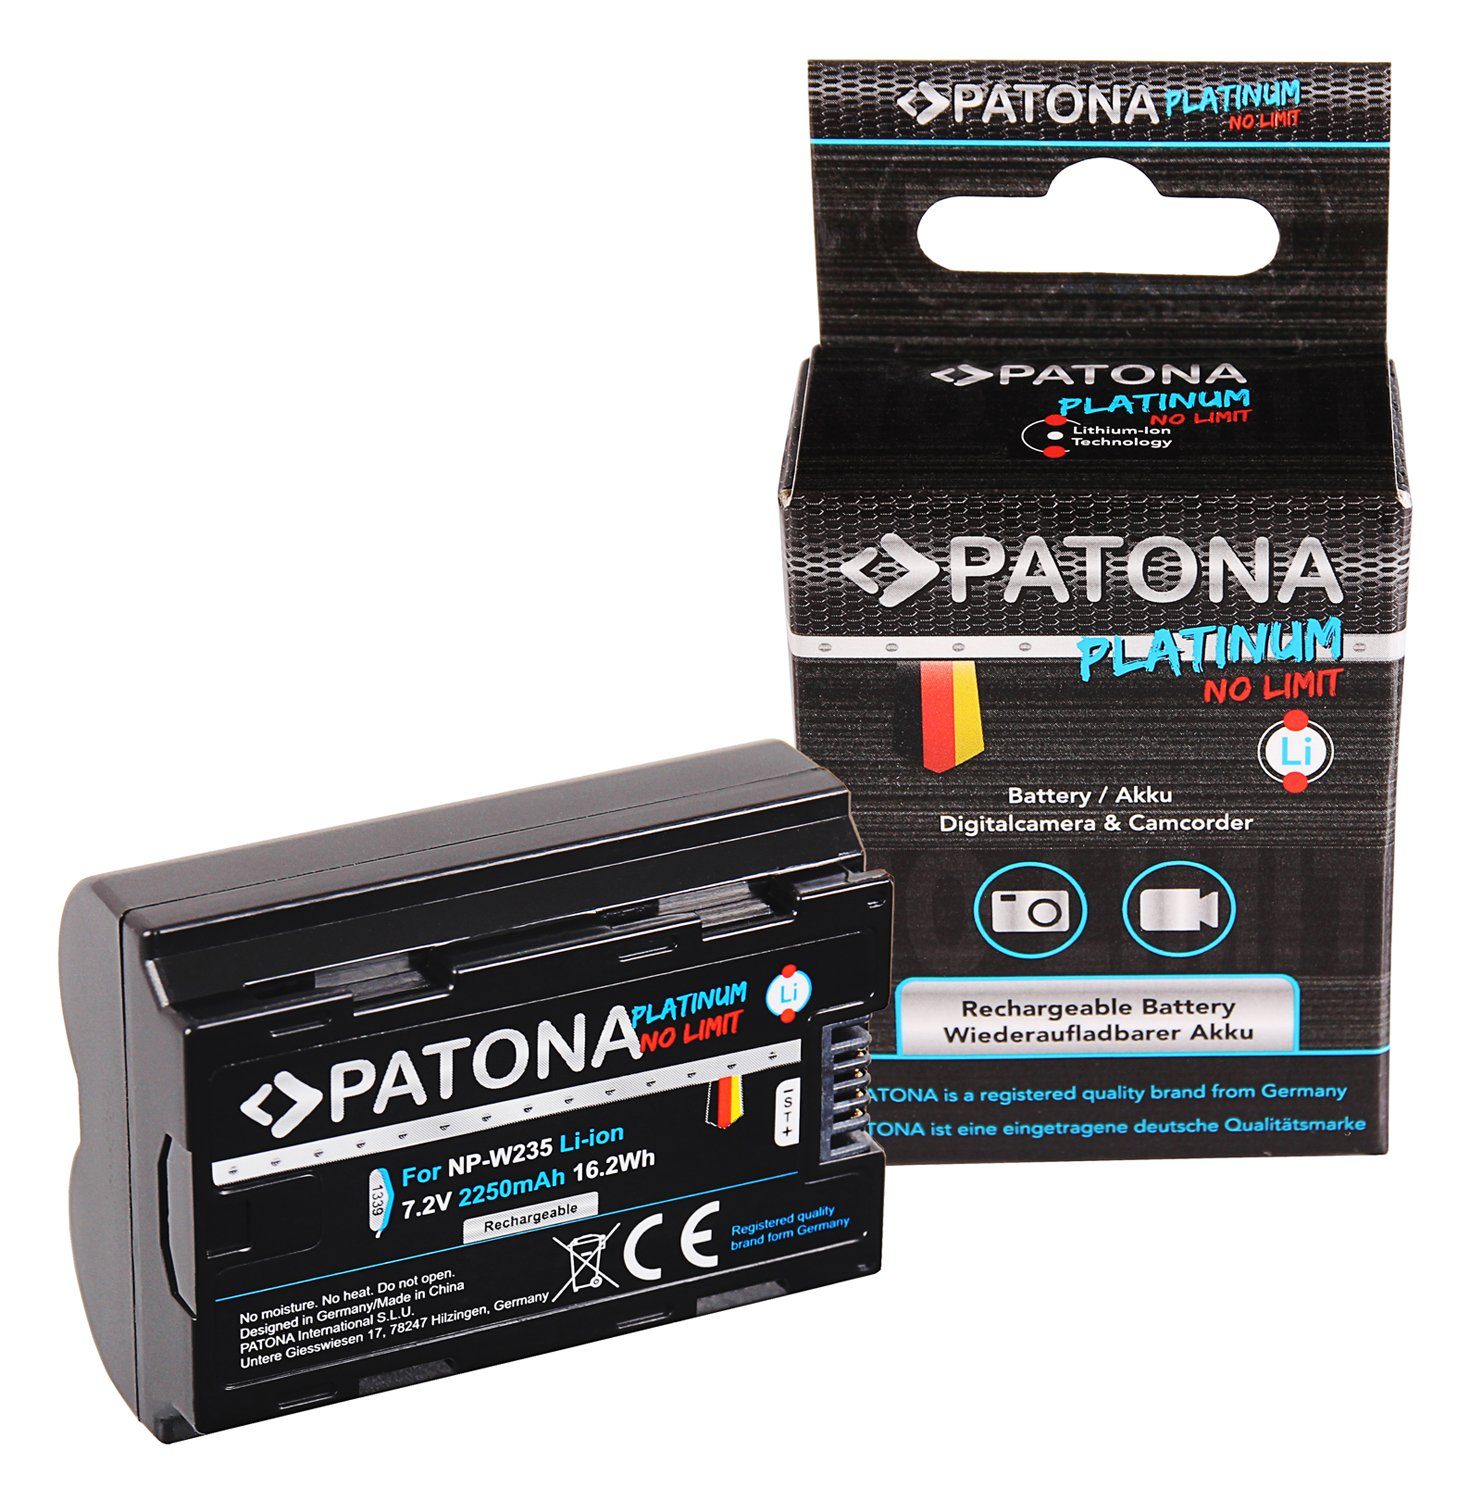 Patona Platinum Akku XT4 NP-W235 Kamera-Akku für 2250 Fujifilm / XT-4 mAh die